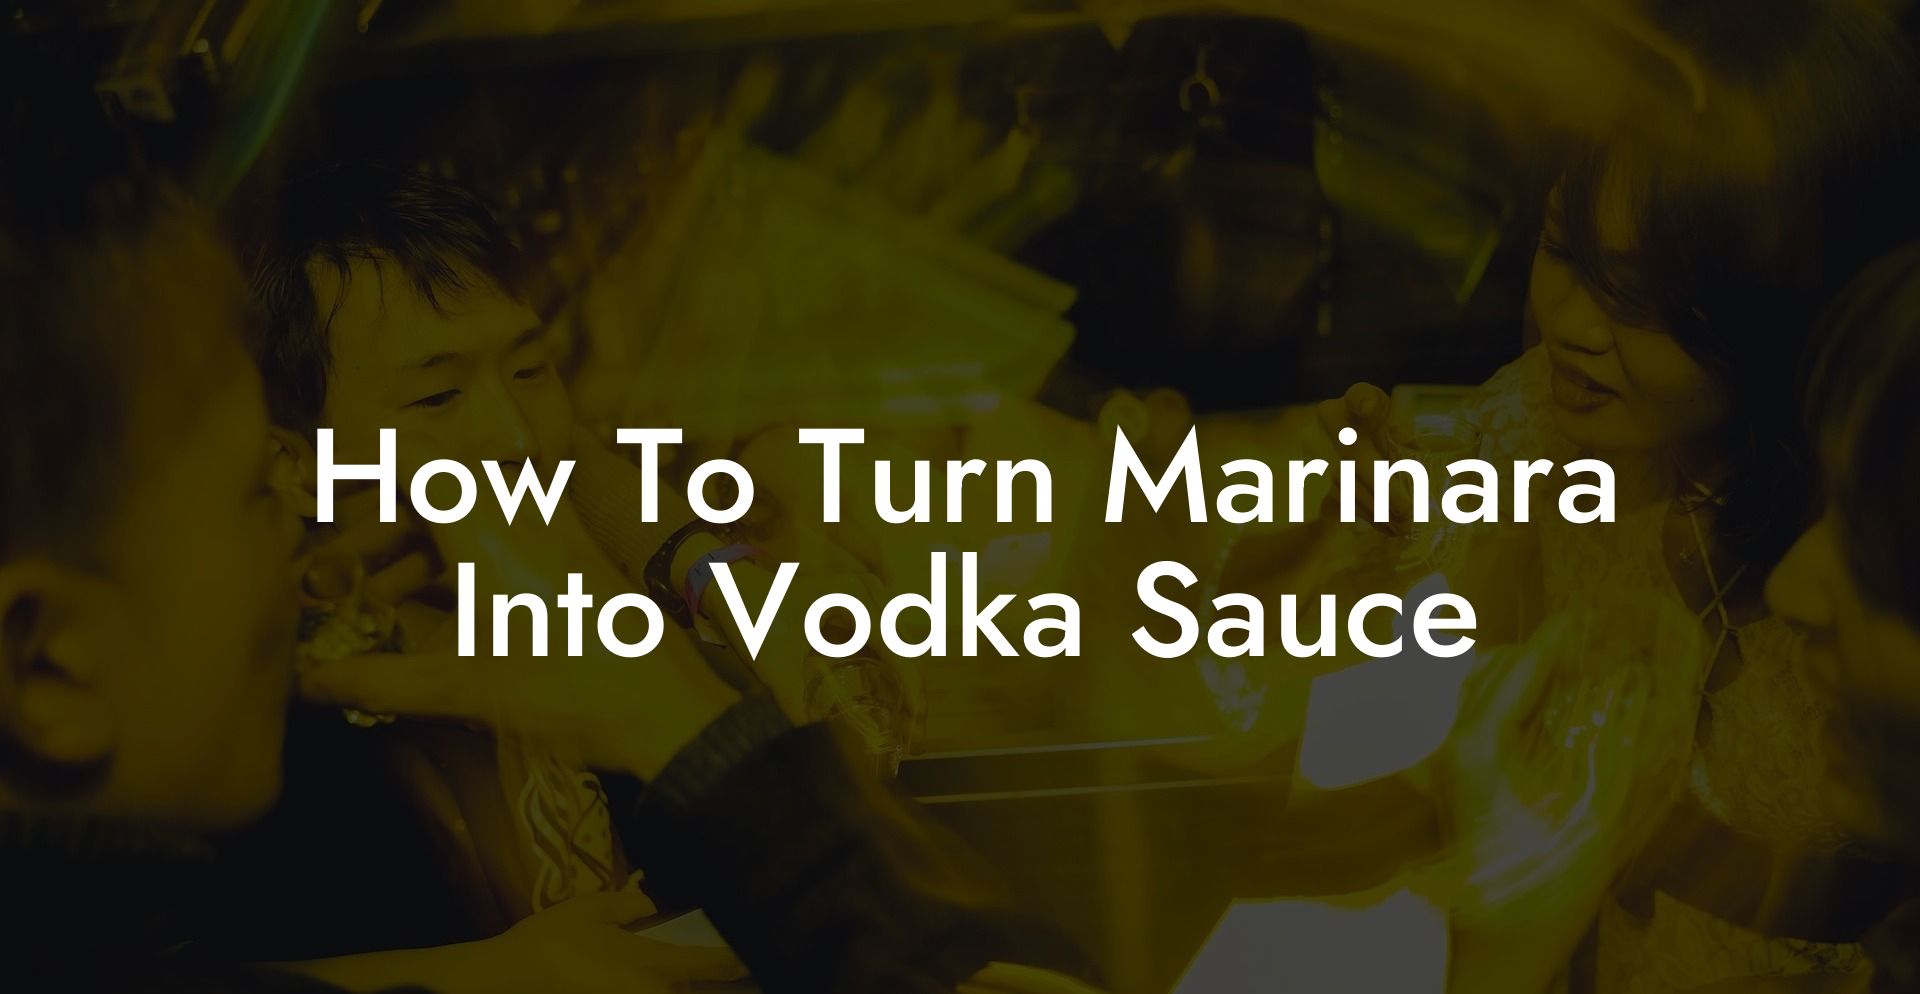 How To Turn Marinara Into Vodka Sauce